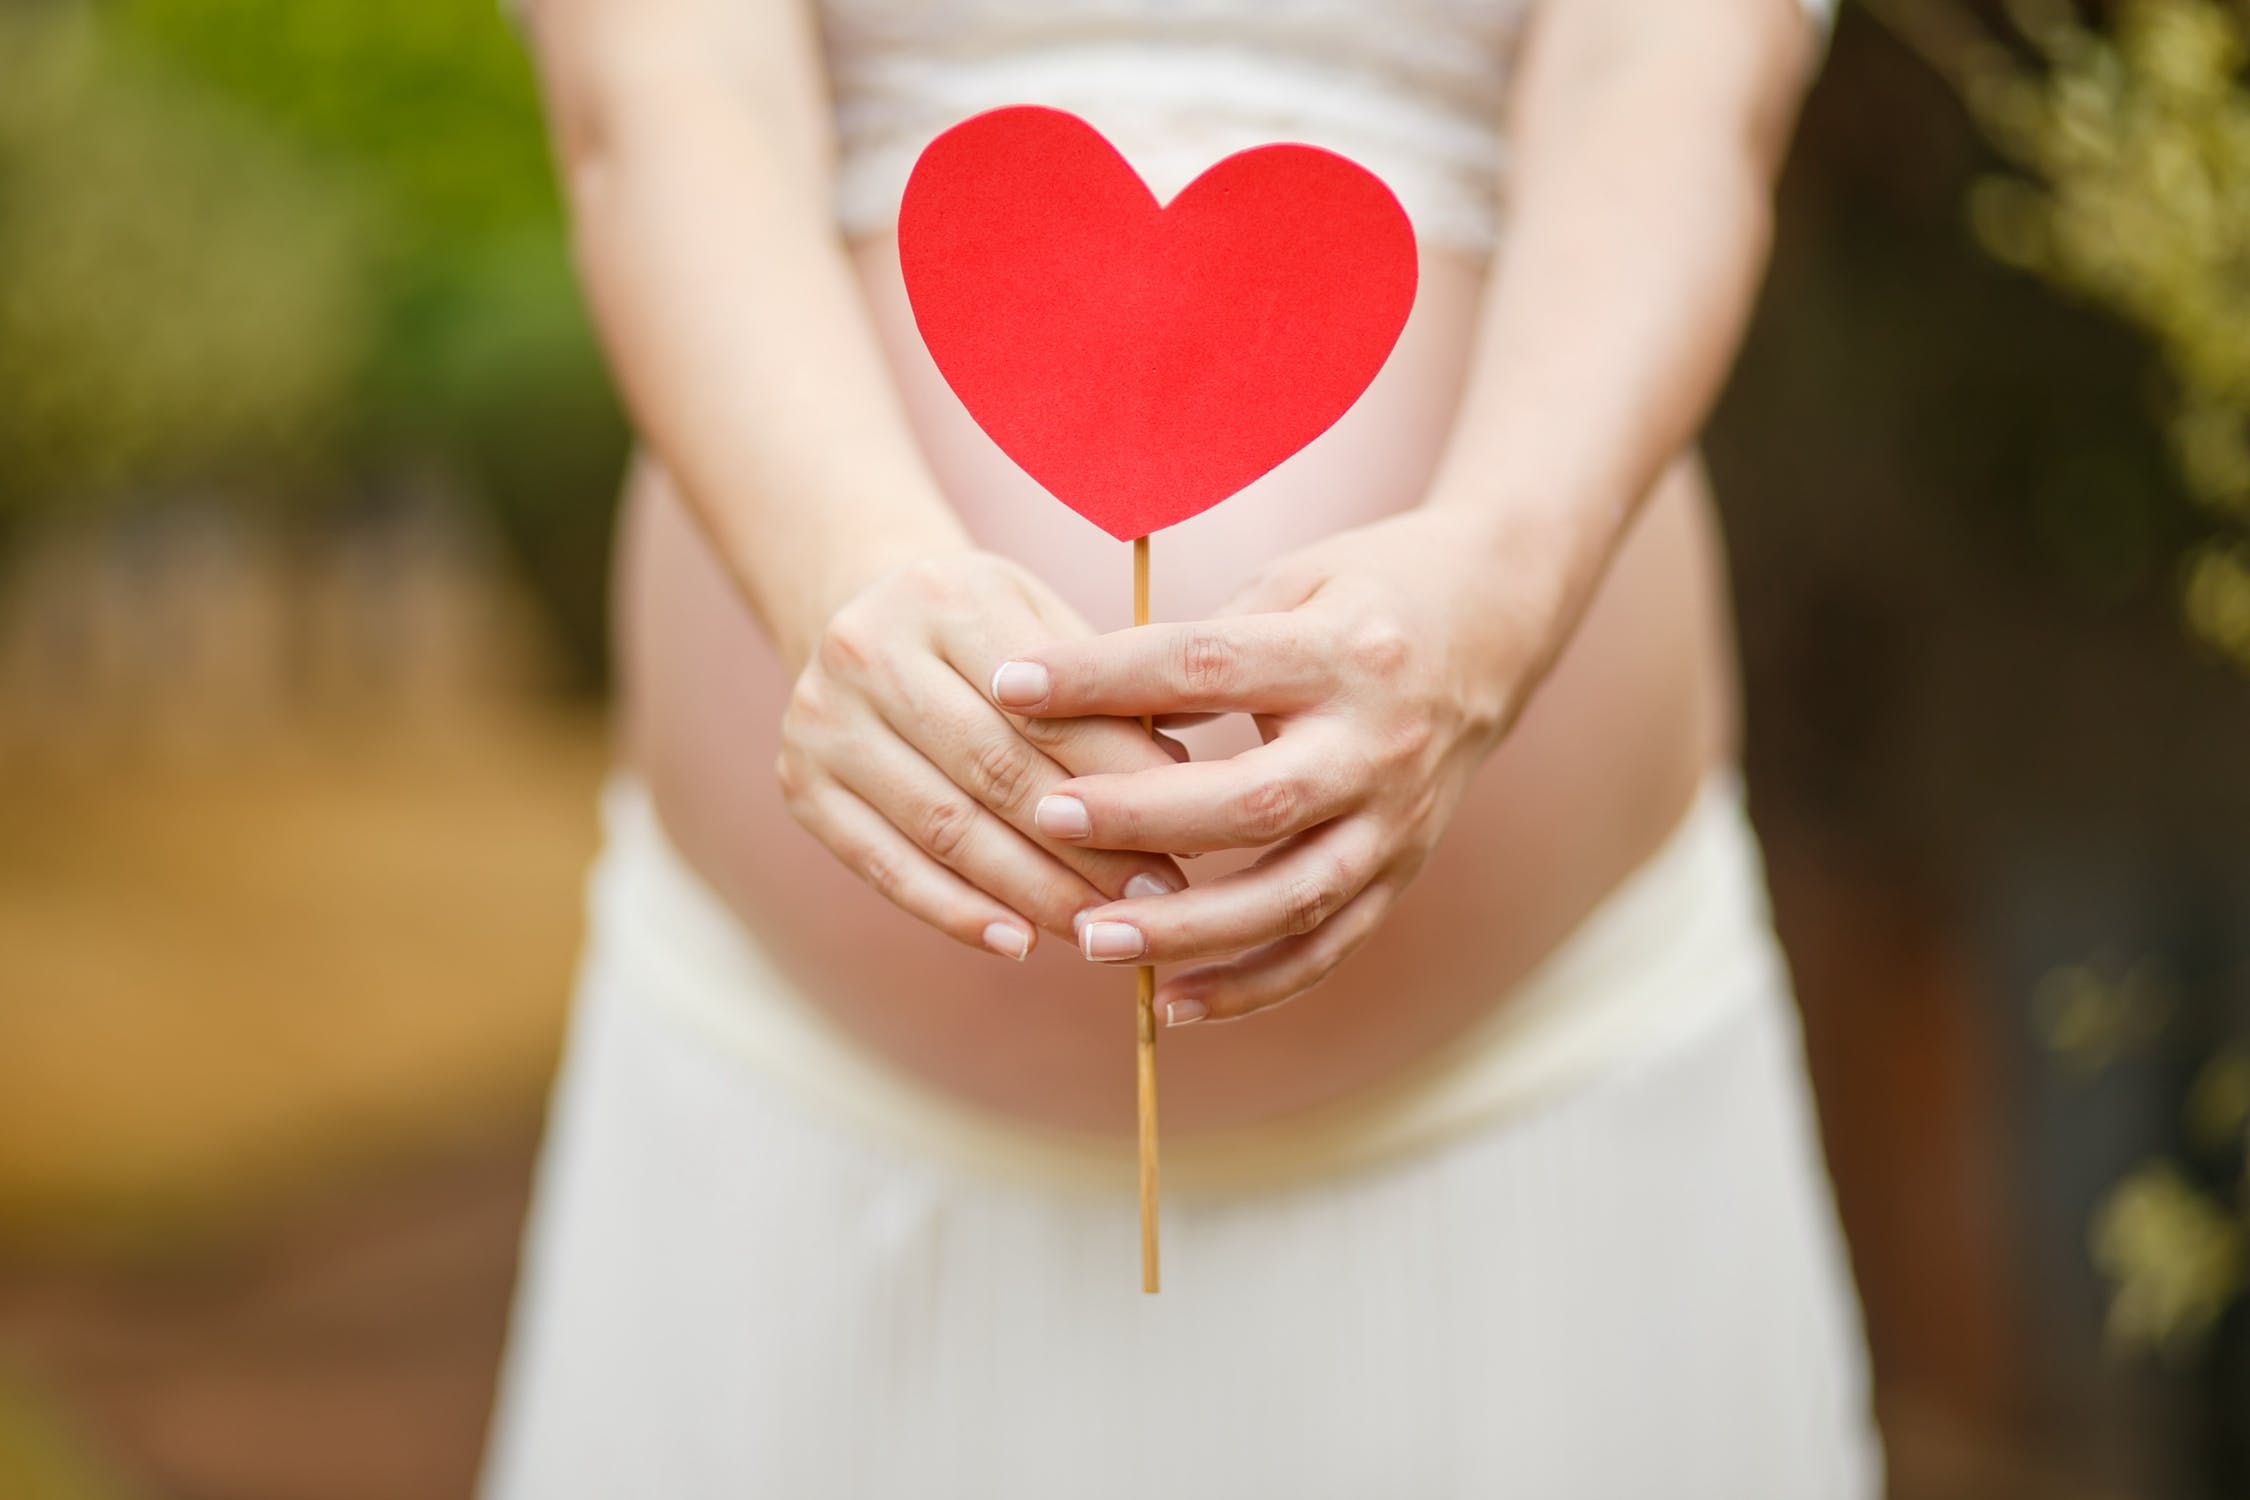 17 žien zdieľa svoje najvtipnejšie a najnechutnejšie historky z tehotenstva